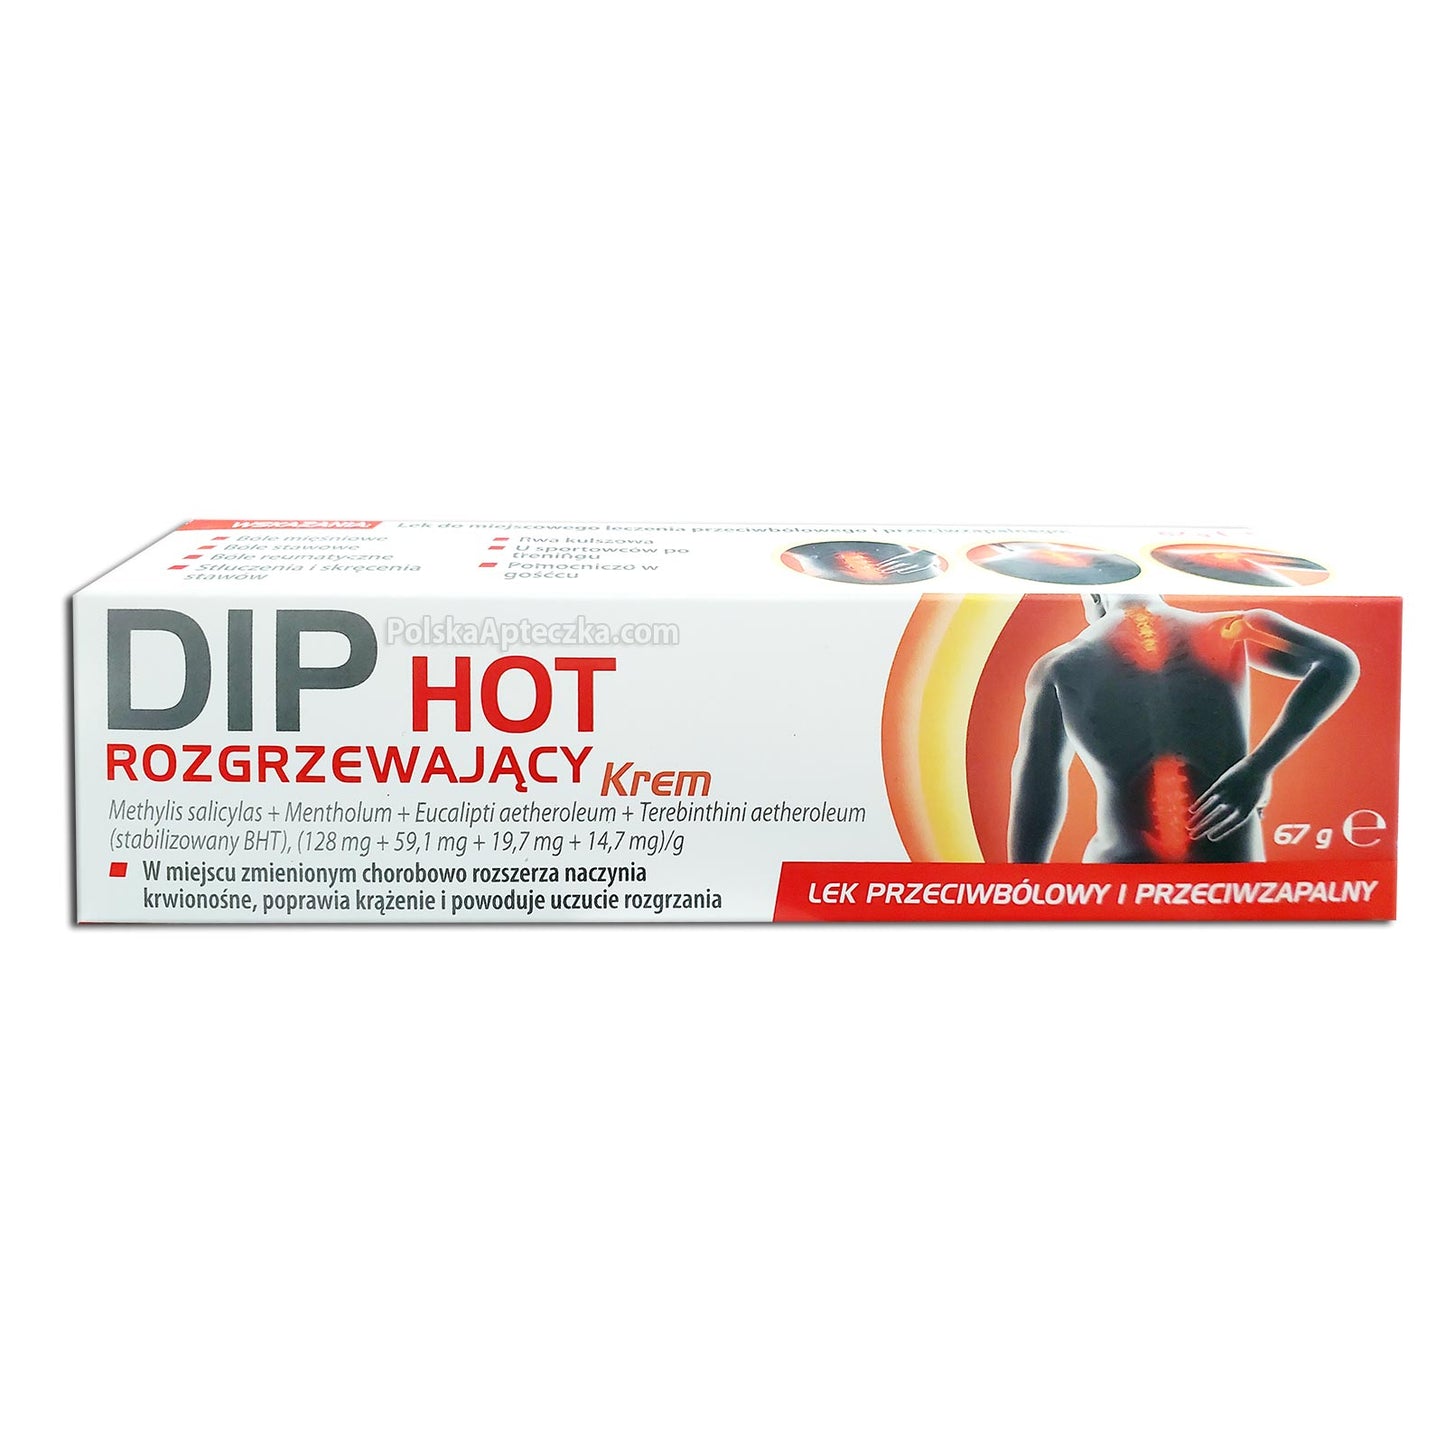 Dip Hot rozgrzewający krem, 67g